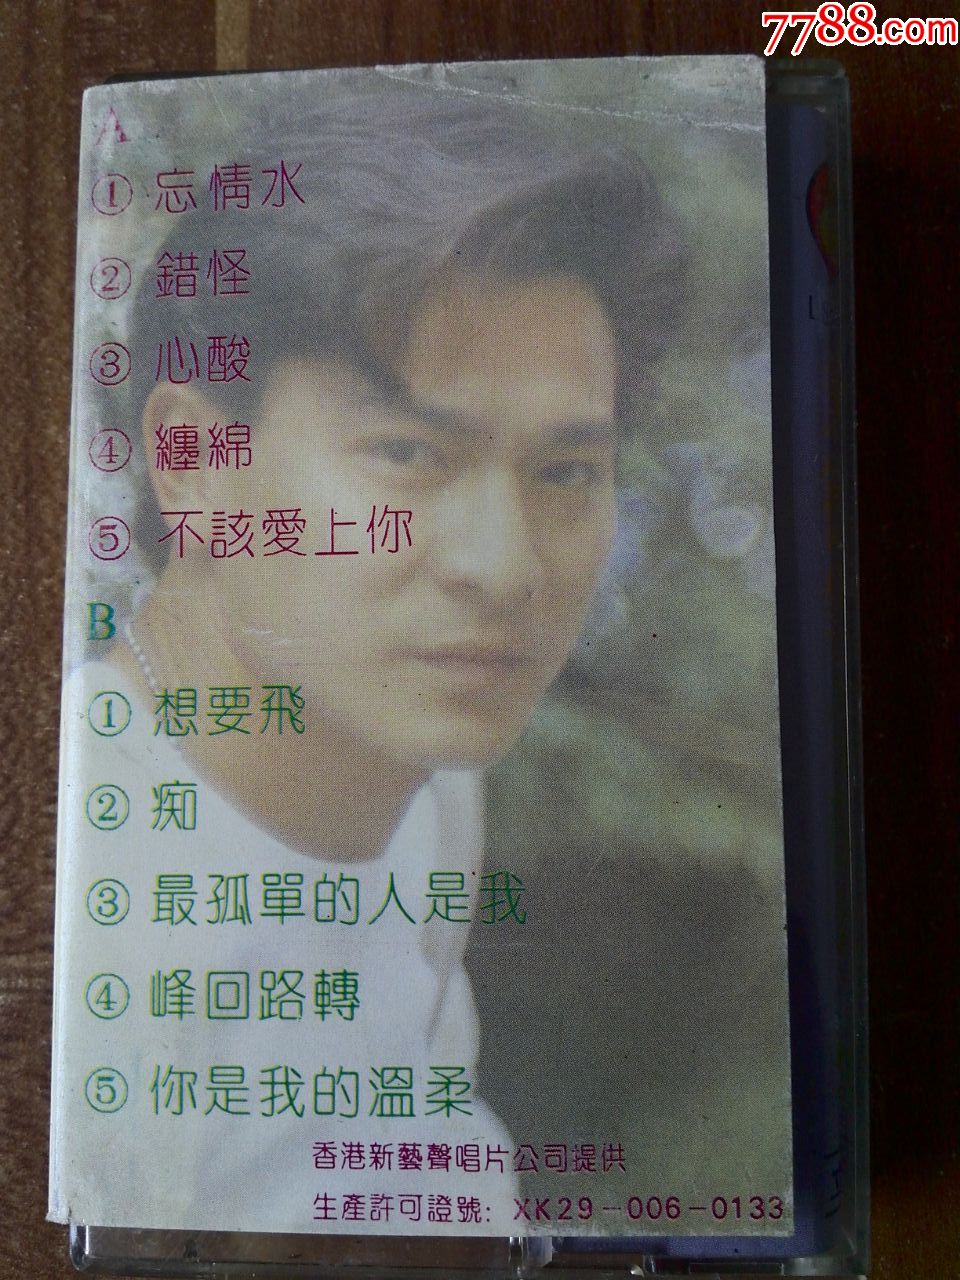 原版引进,刘德华演唱专辑《忘情水》香港新艺宝唱片提供